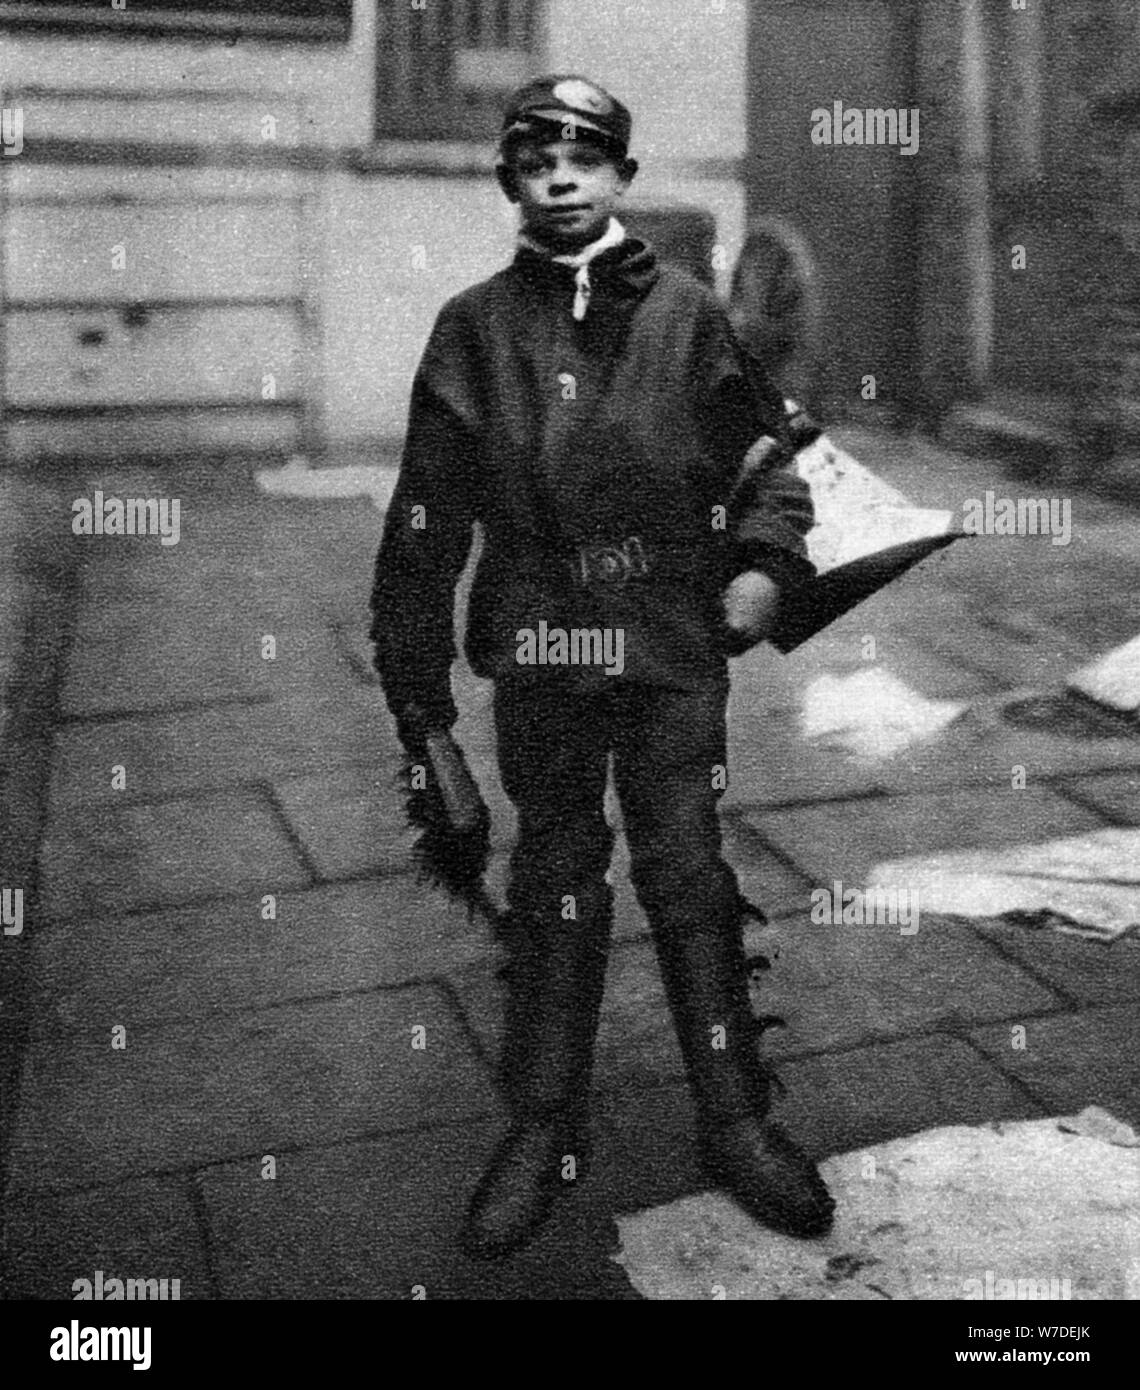 'Scavenger boy', qui nettoie les crottes de cheval dans le Road, Londres, 1926-1927. Artiste : Inconnu Banque D'Images